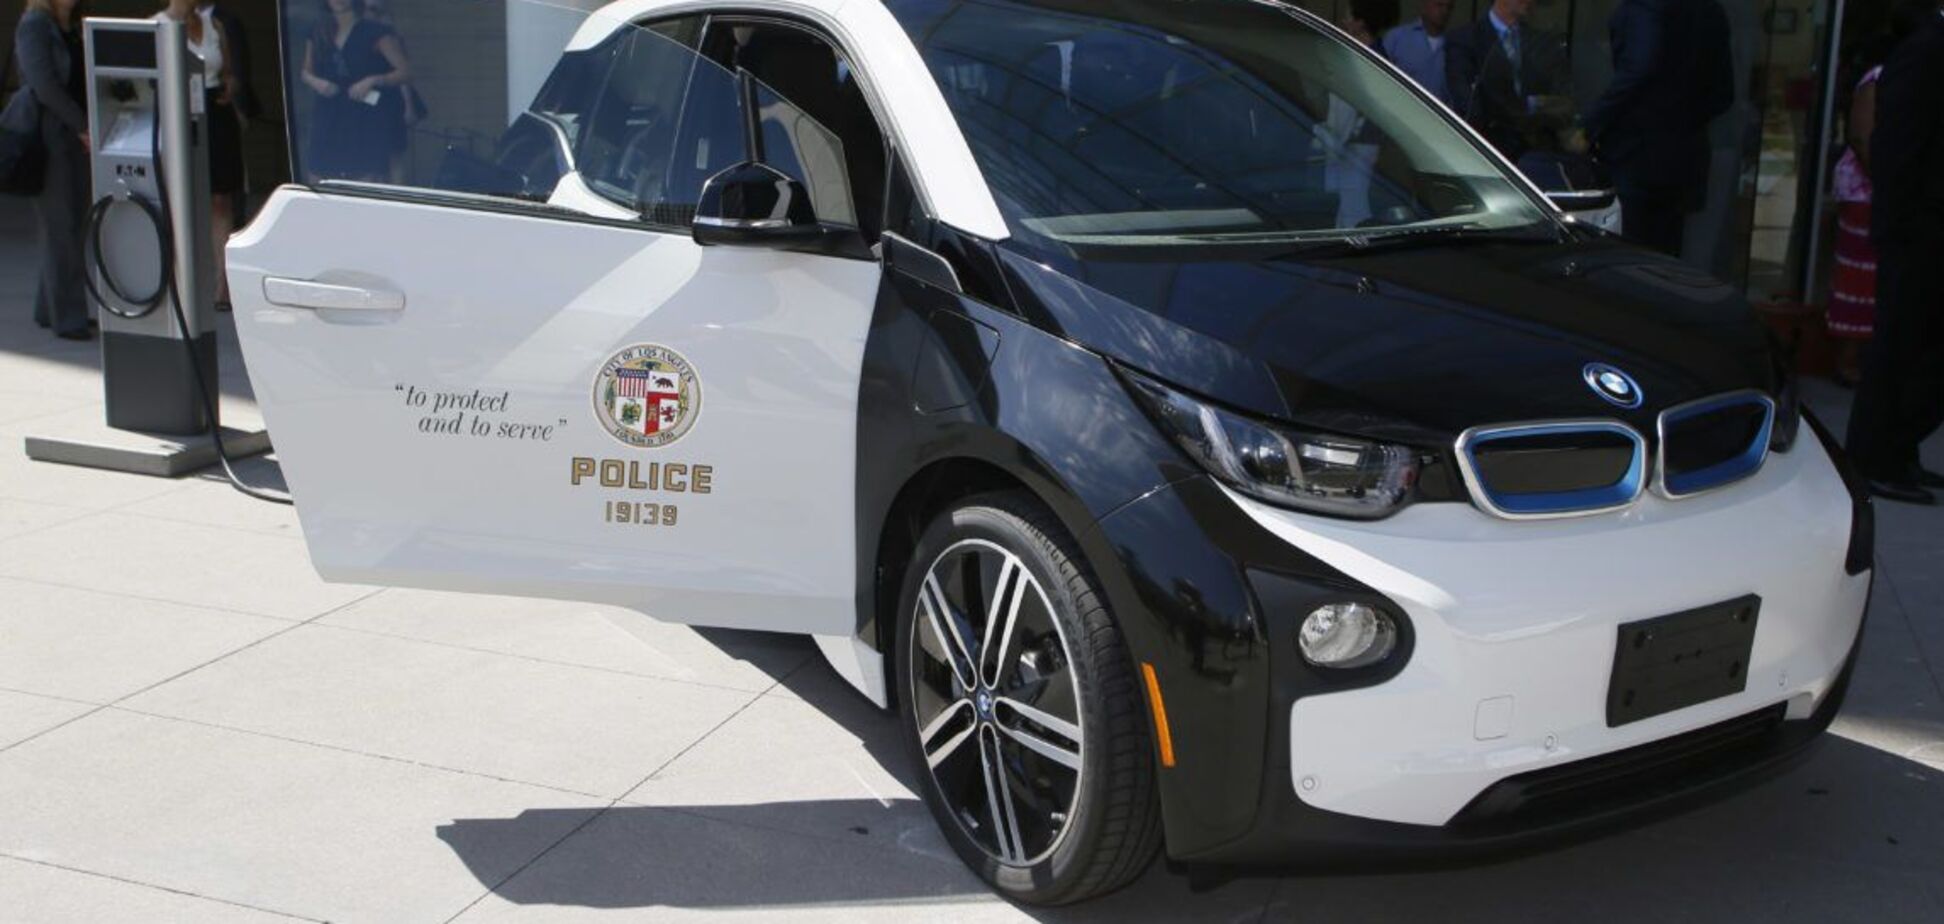 Полицейские BMW i3 продают в США с большой скидкой. Фото: bimmerlife.com